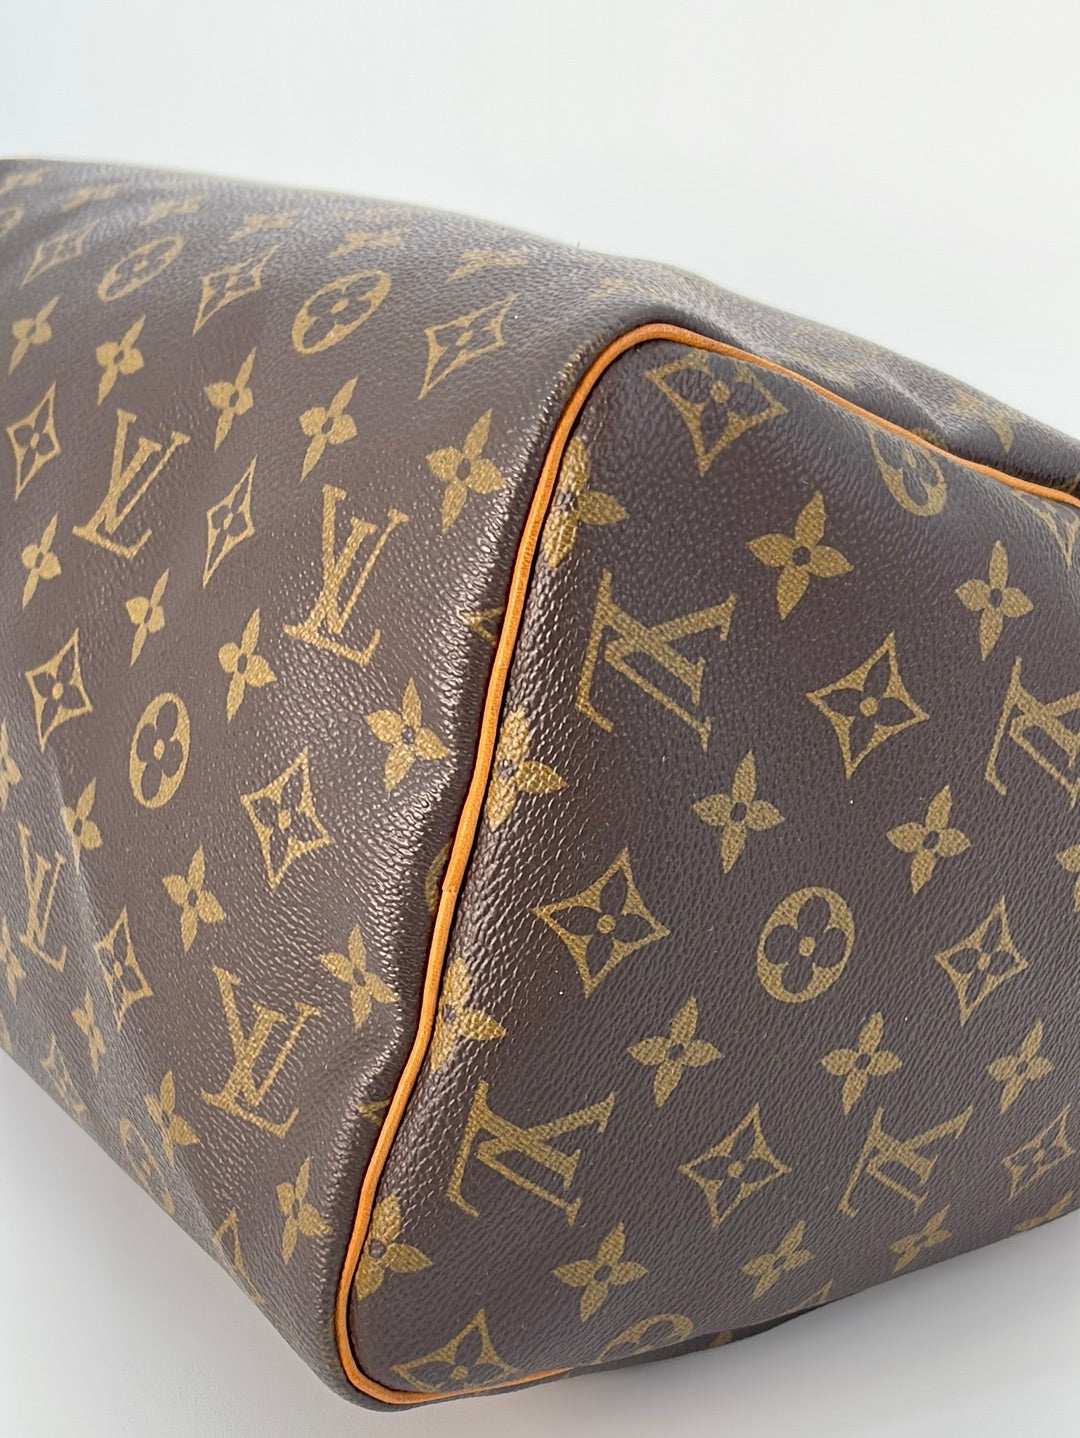 Authentic Louis Vuitton Monogram Speedy 30 Hand Bag Purse SP0955 Vintage